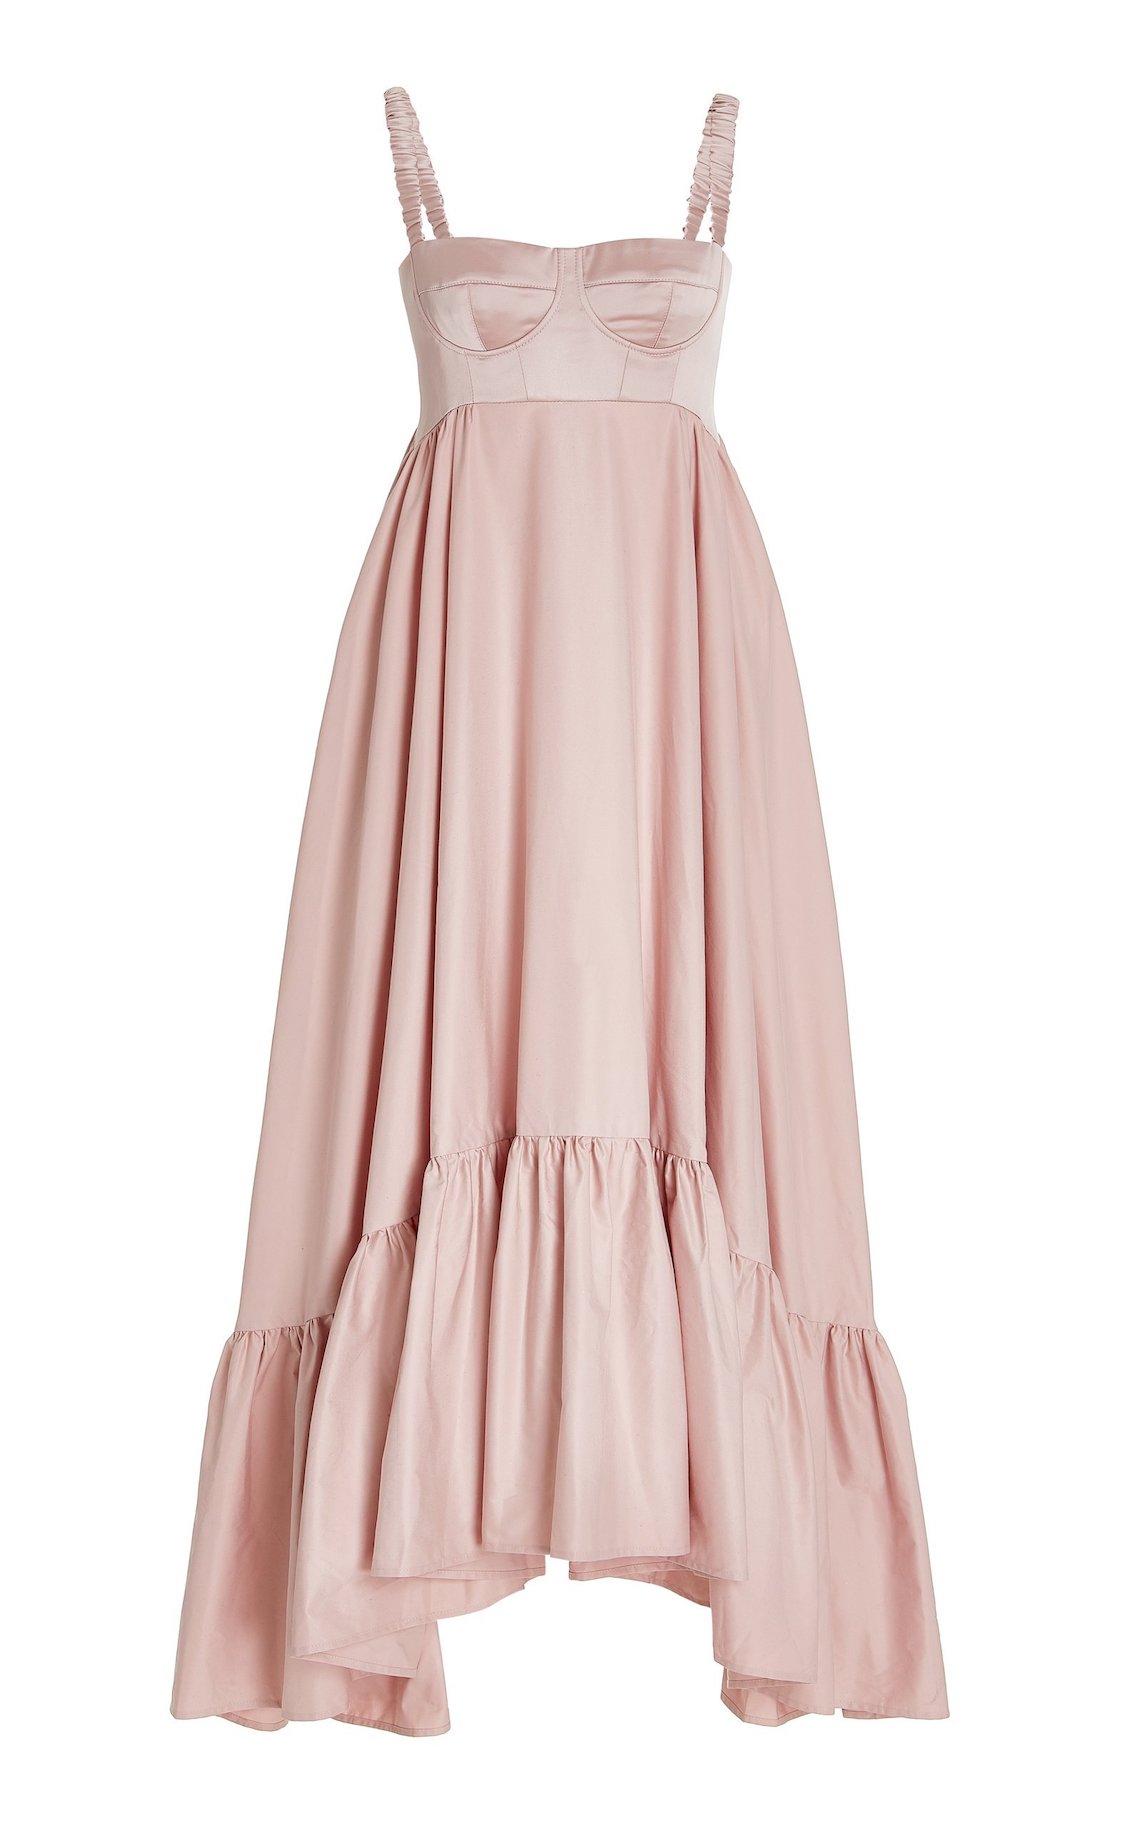 Anna October Pink Wedding Dress Best Pink Wedding Dresses for 2021 2022 Brides Bridal Musings - 30 chiếc áo dài cưới màu hồng dành cho cô dâu yêu thích sắc màu